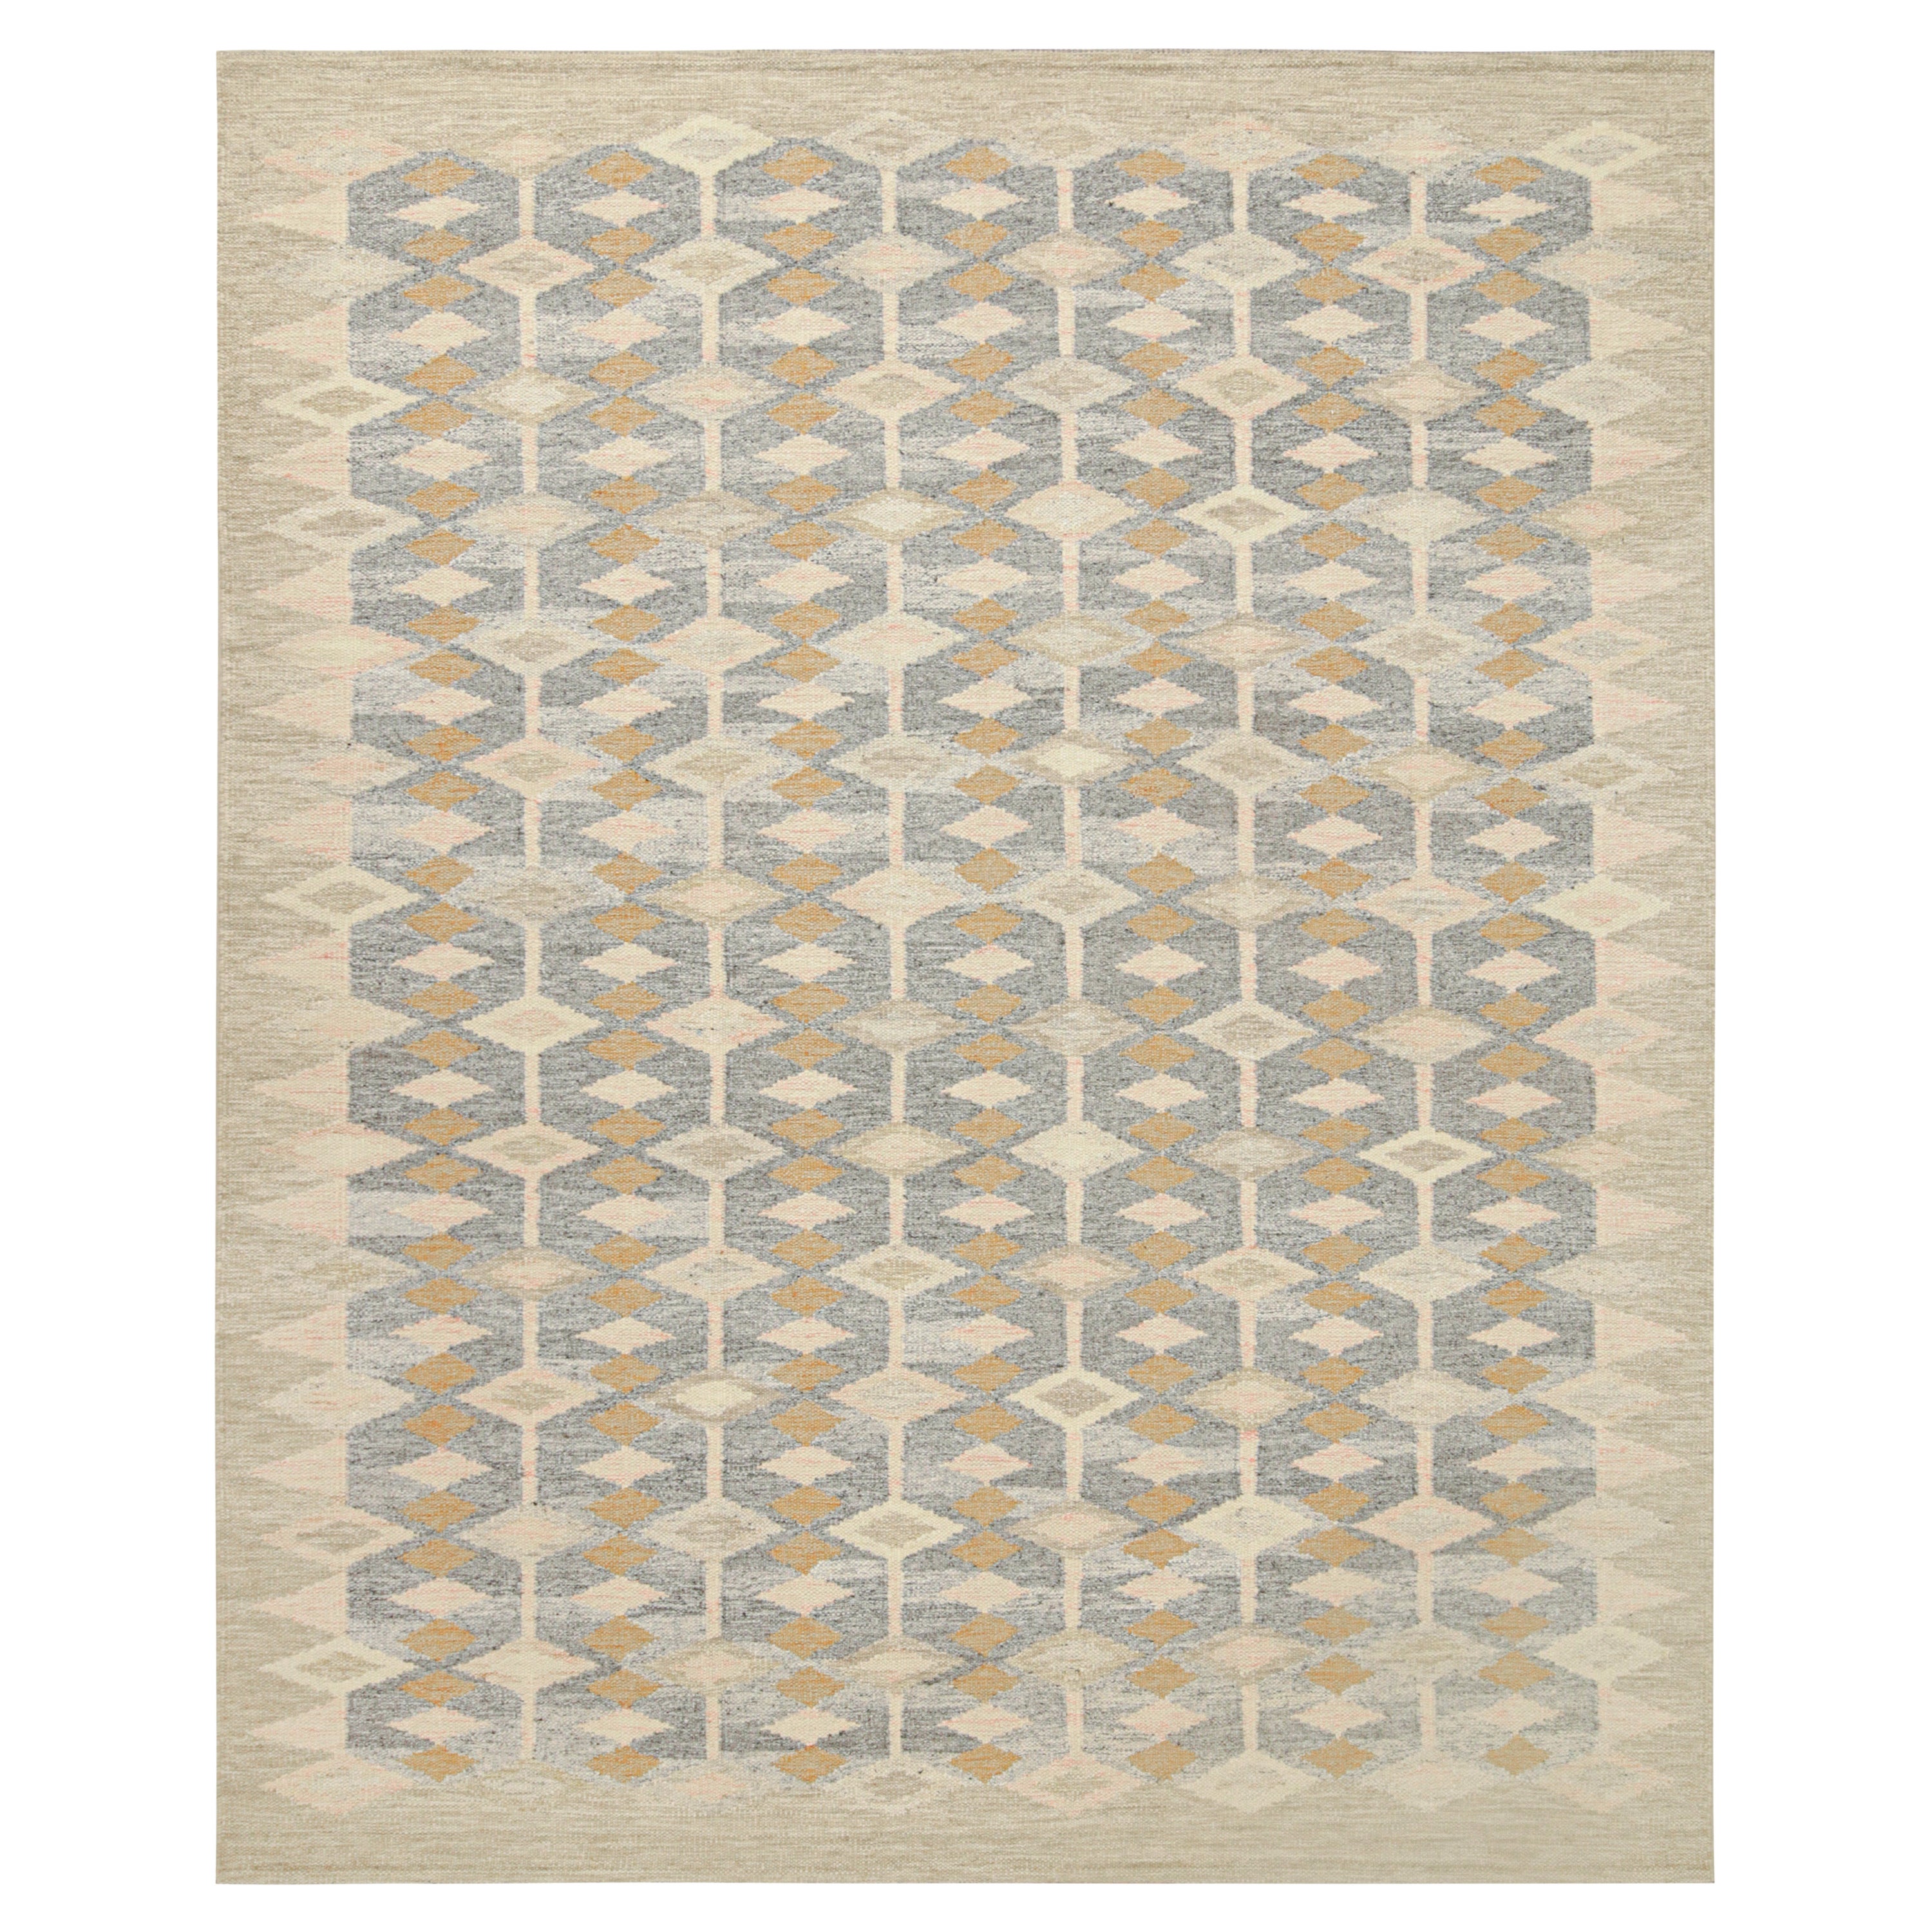 Kilim de style scandinave de Rug & Kilim en beige et gris avec motifs géométriques